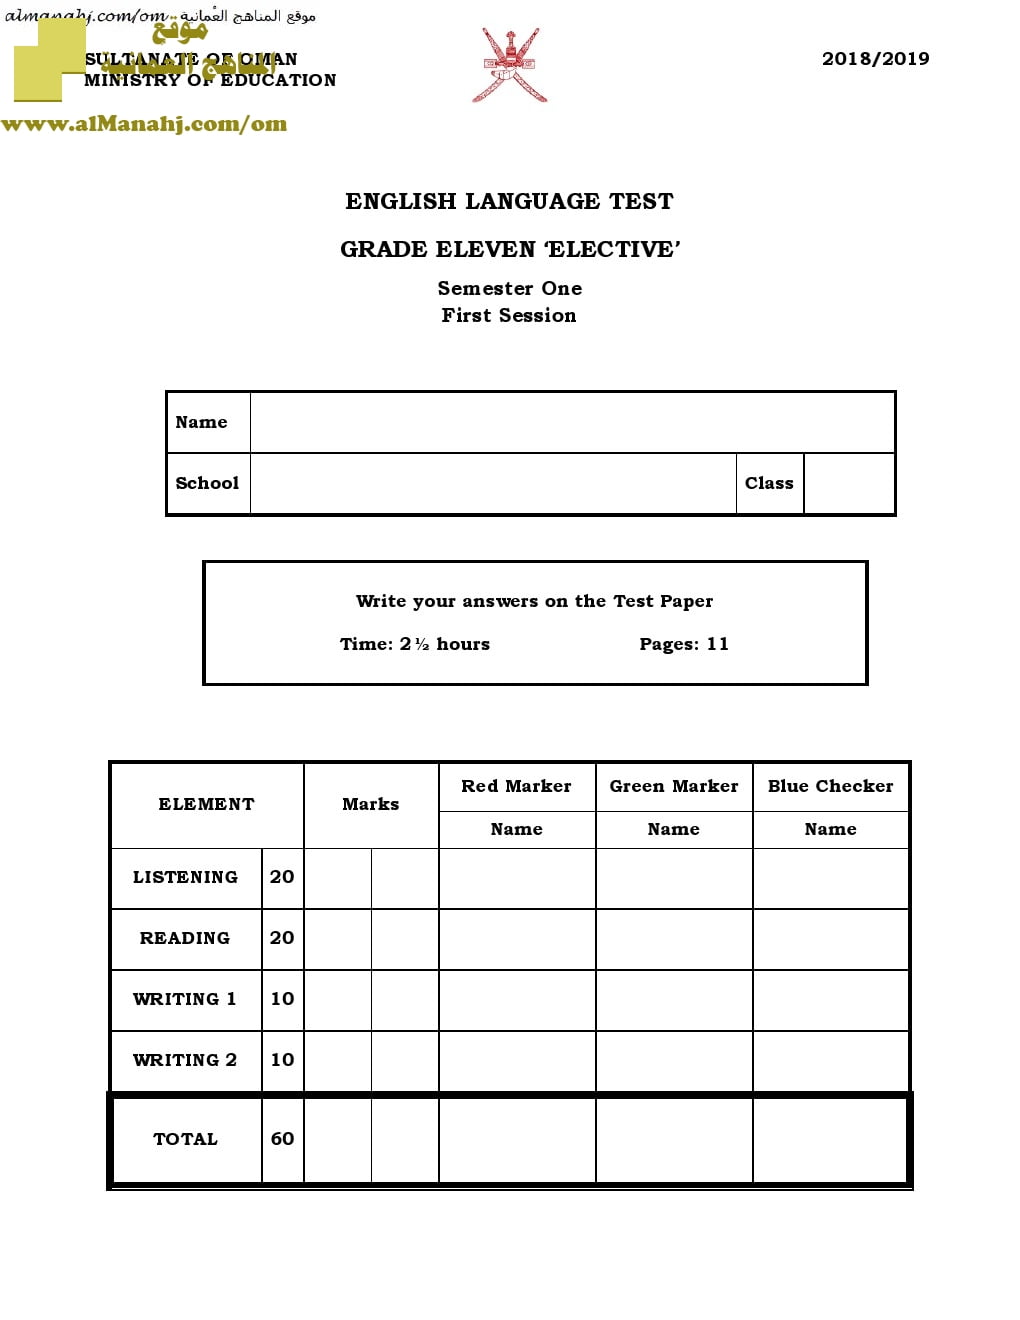 أسئلة وإجابة الامتحان الرسمي الدور الأول والثاني (ELECTIVE) (لغة انجليزية) الحادي عشر